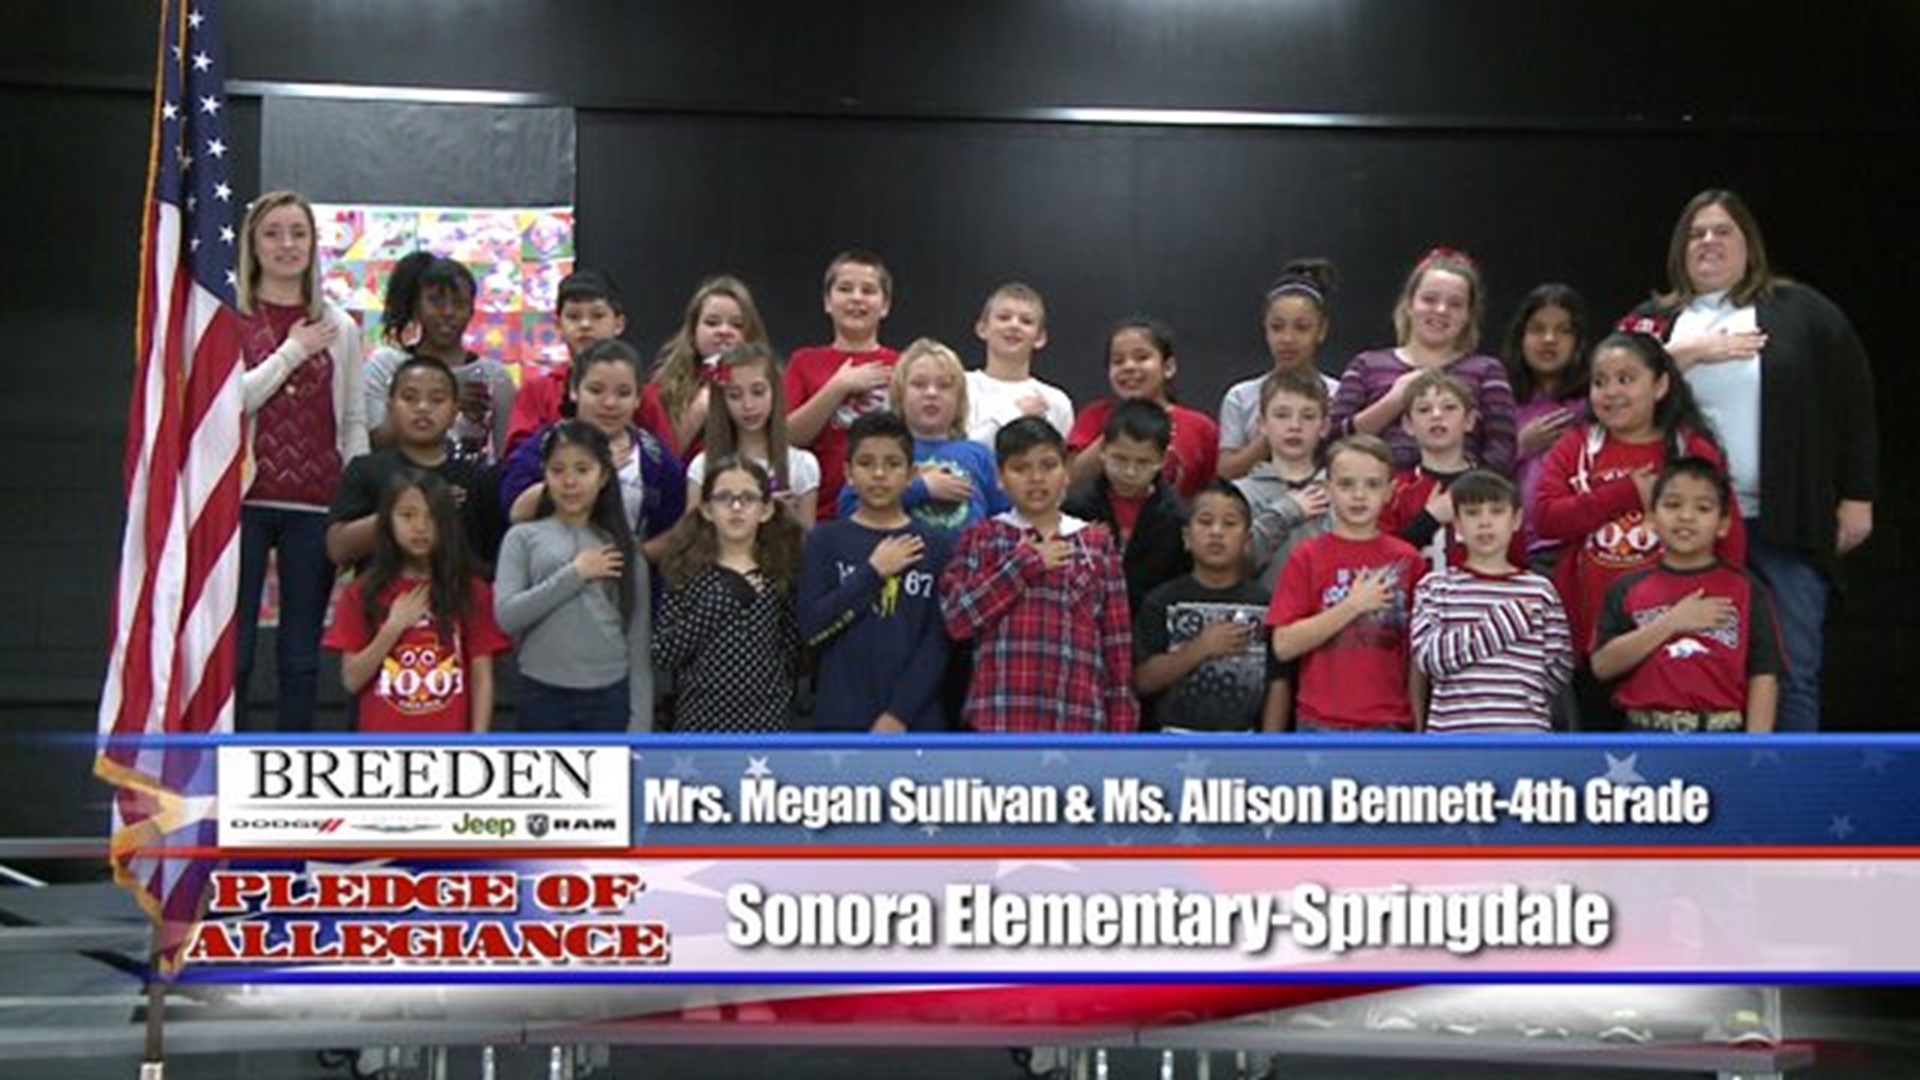 Sonora Elementary - Springdale, Mrs.Sullivan & Ms. Bennett - Fourth Grade